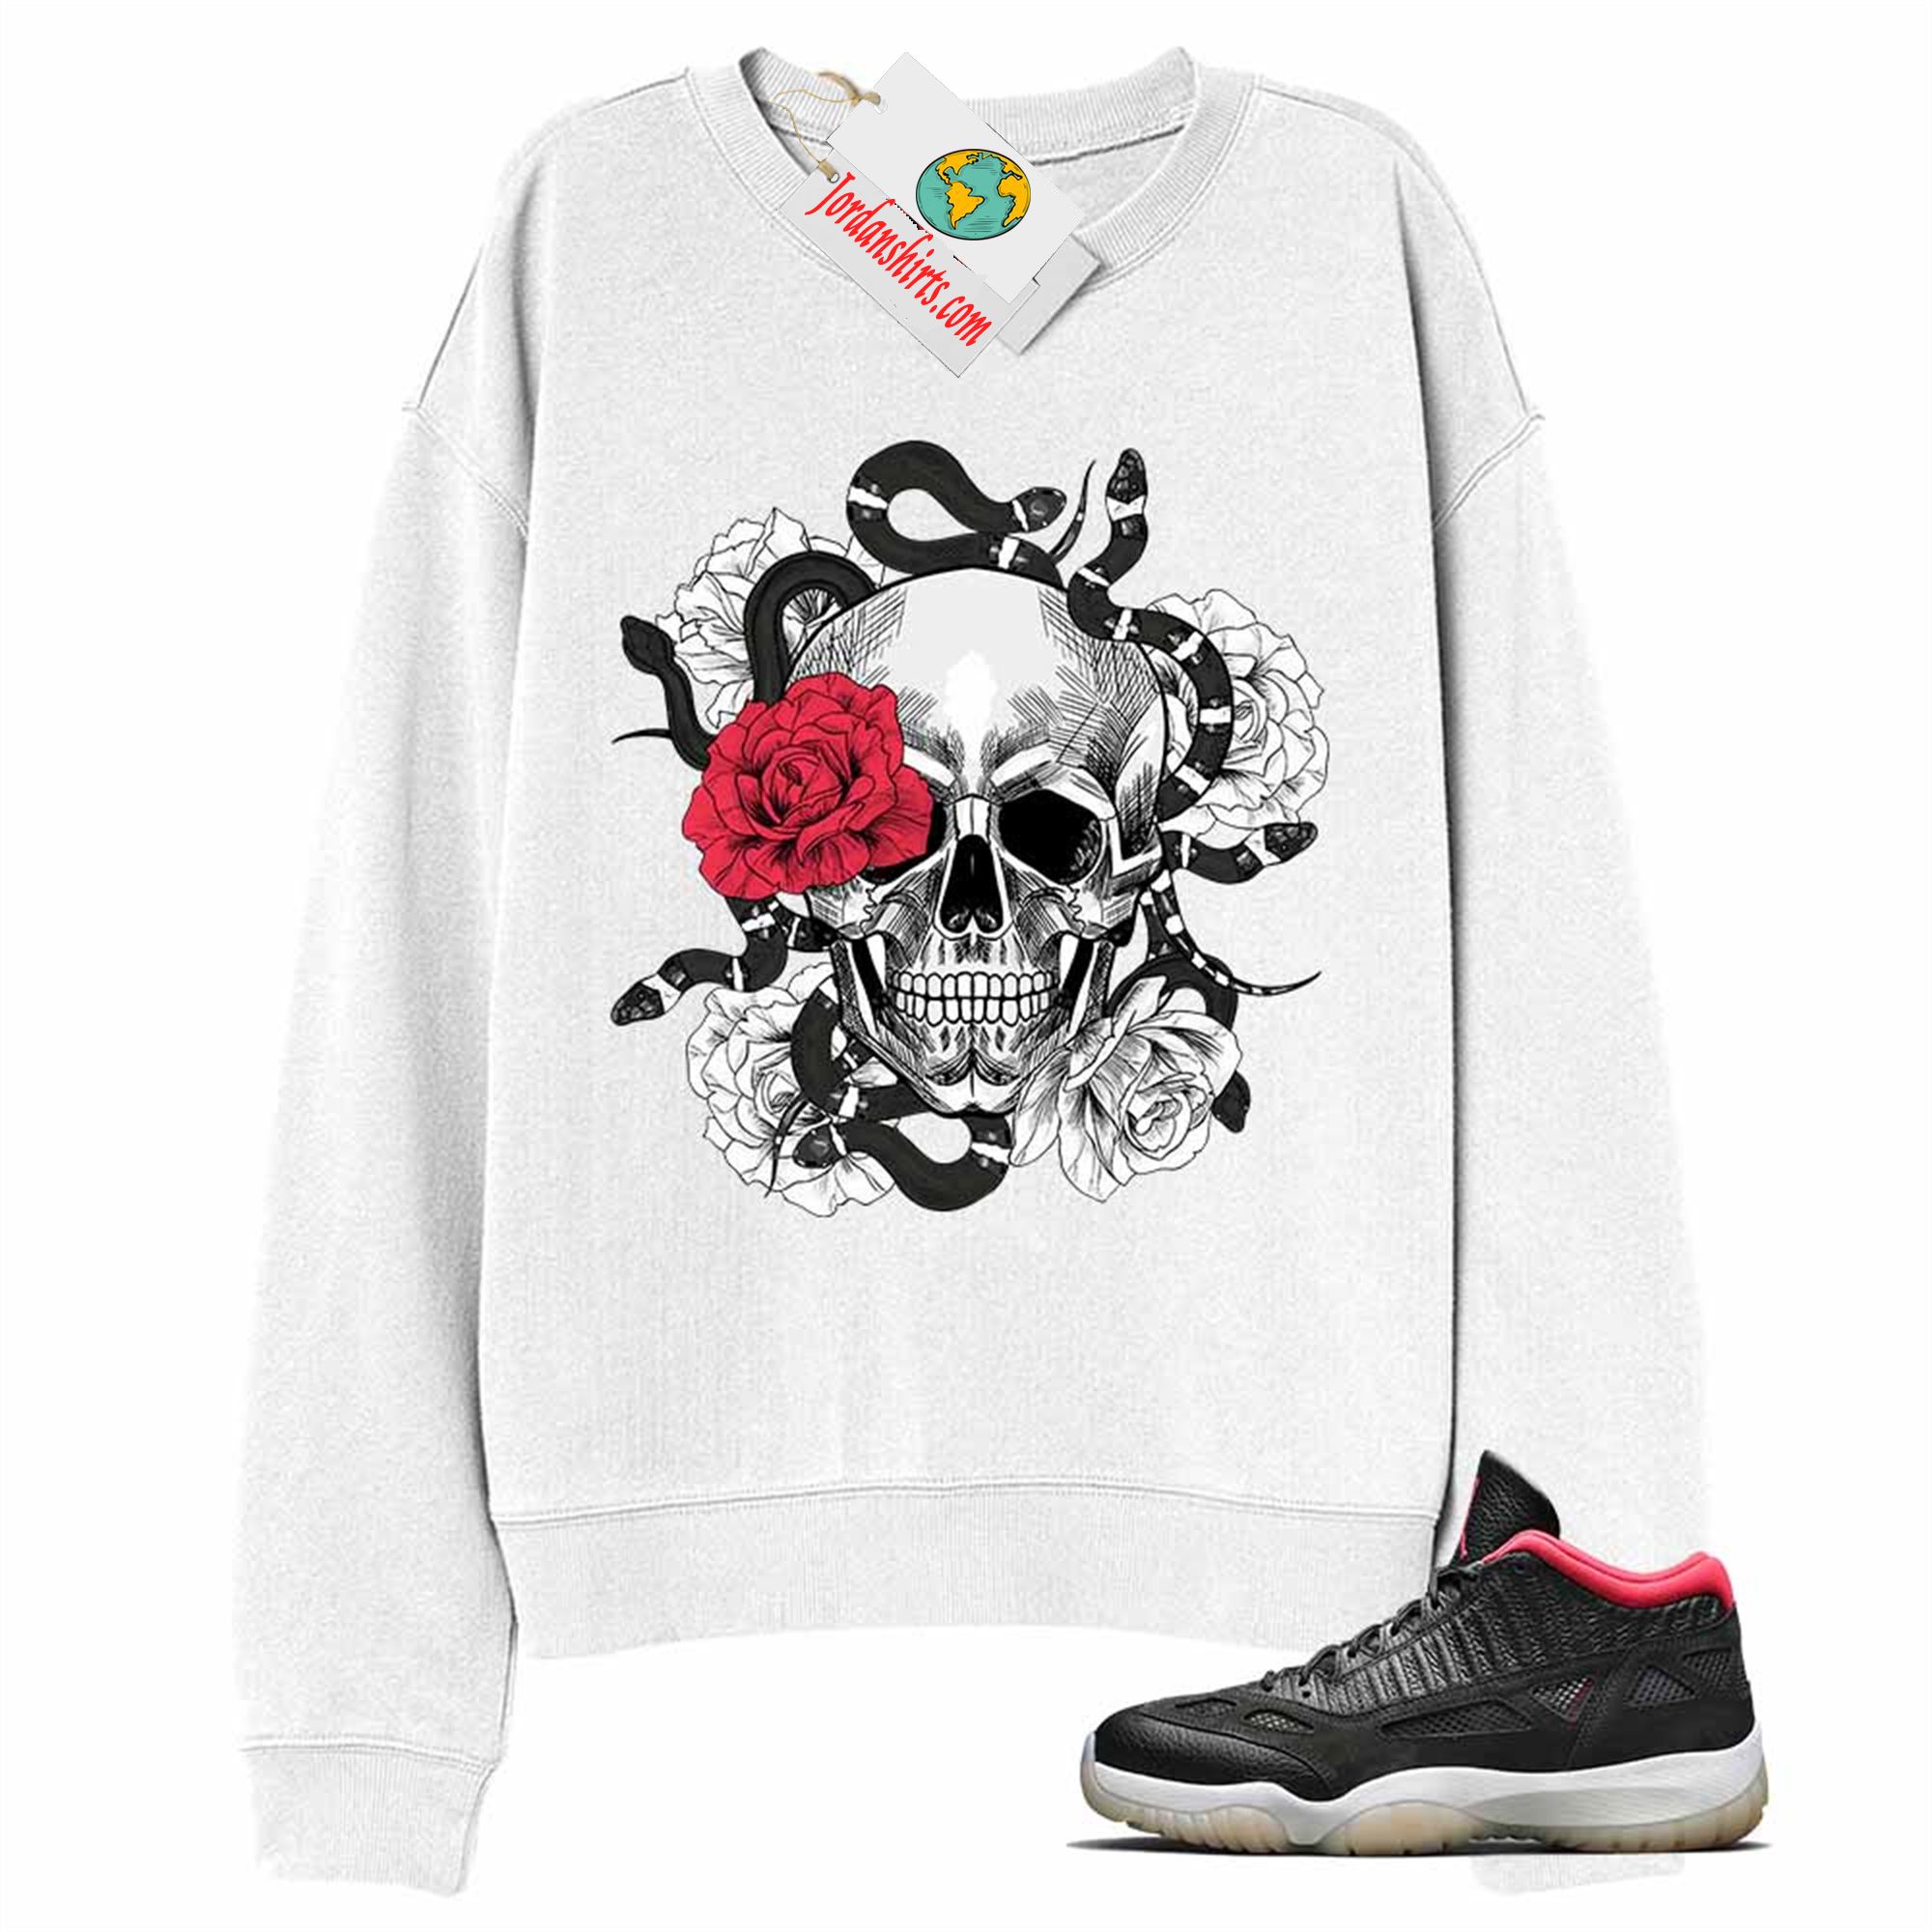 Jordan 11 Sweatshirt, Snake Skull Rose White Sweatshirt Air Jordan 11 Bred 11s Size Up To 5xl